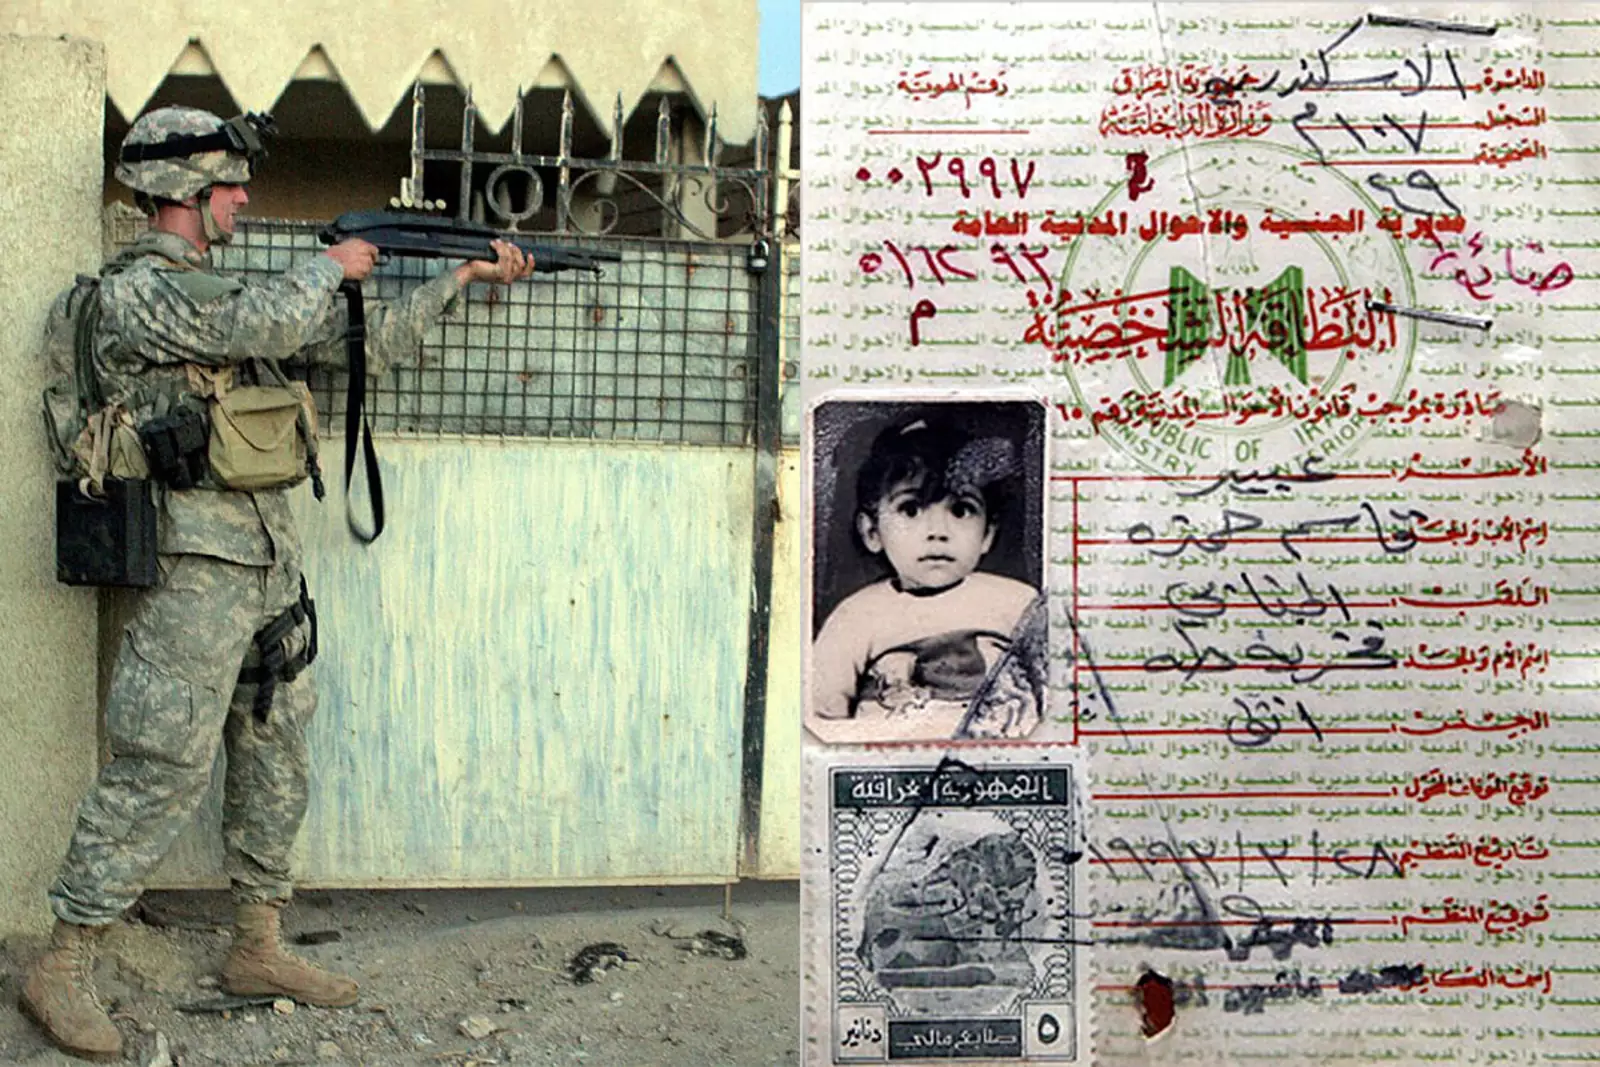 Слева один из солдат США Стивен Грин, который расстрелял отца, мать и сестру девочки, прежде чем изнасиловать ее и убить. Справа иракский идентификационный документ, на котором Абир Касим Хамза в возрасте 2 лет. Дата рождения — 19 августа 1991 года.